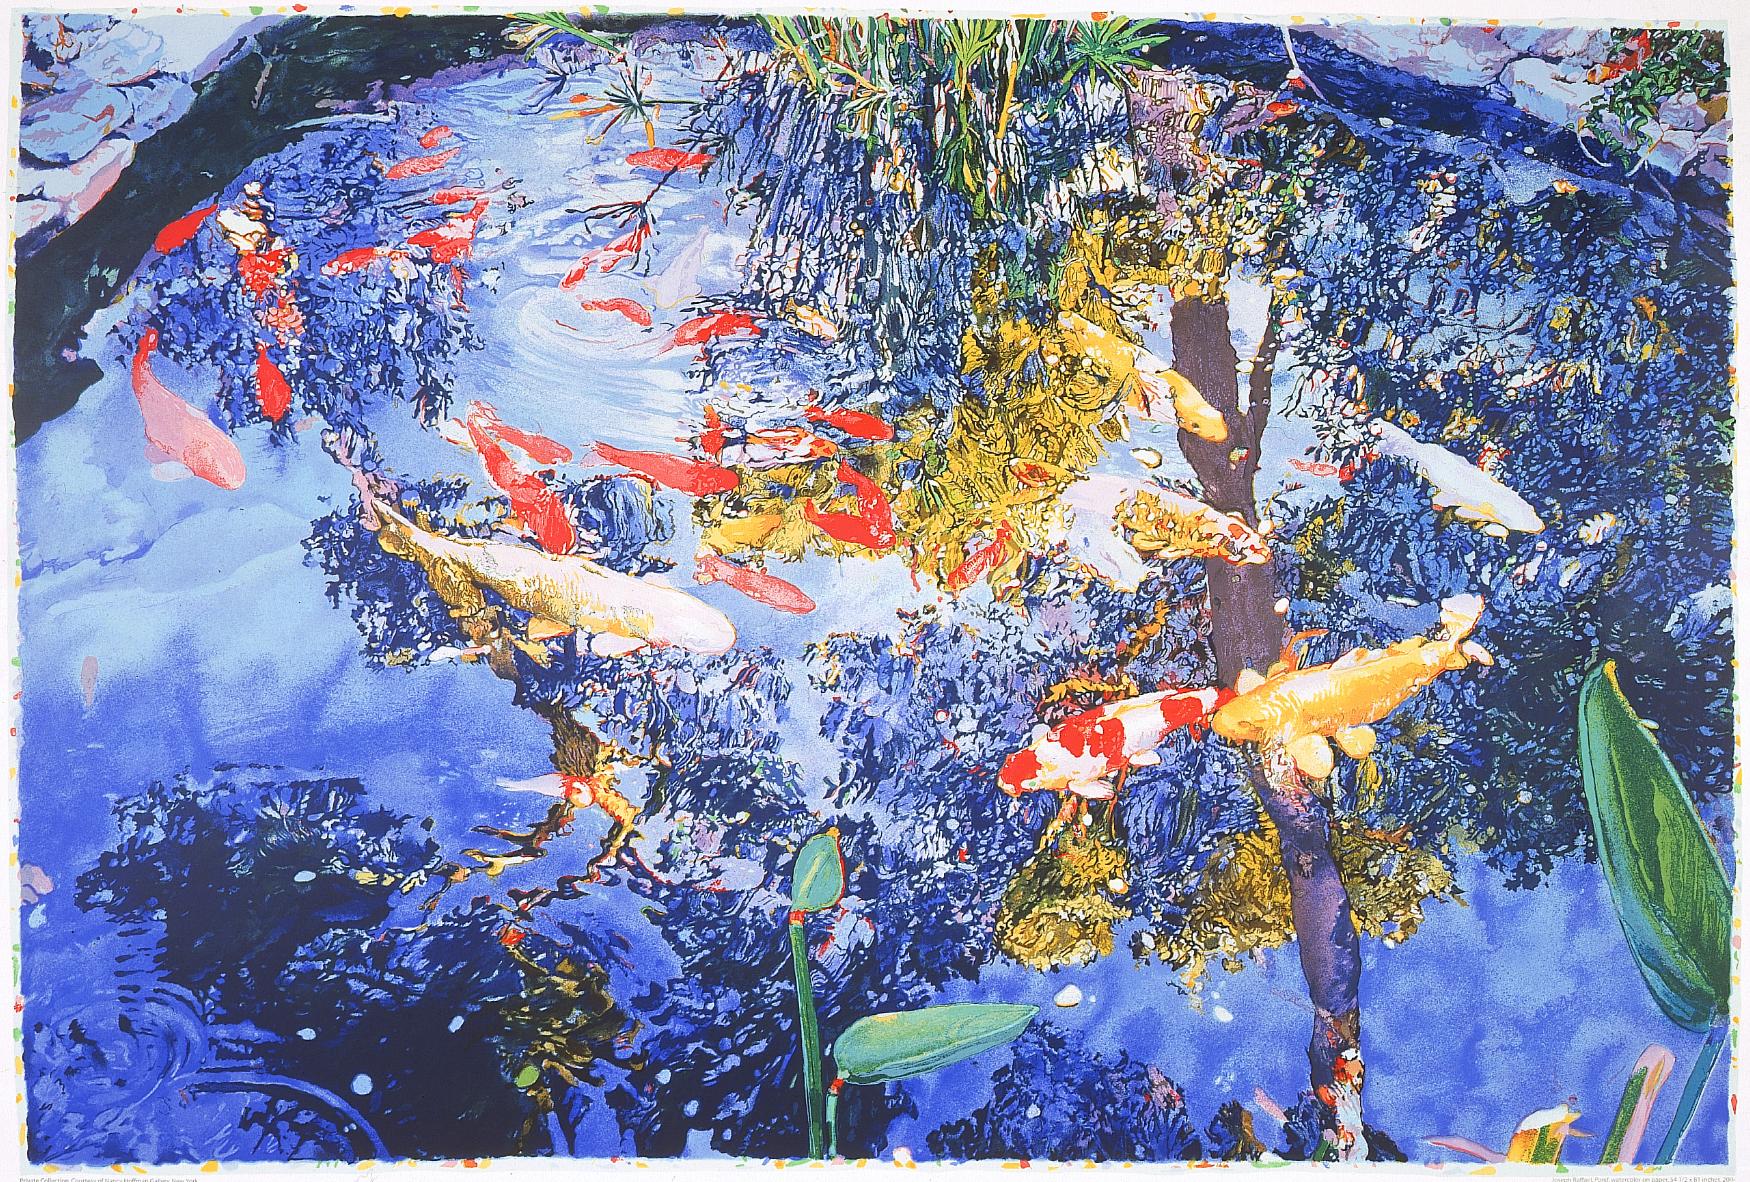 Teich, Siebdruck, 2004 von Joseph Raffael (rote und gelbe Kois im Teich)